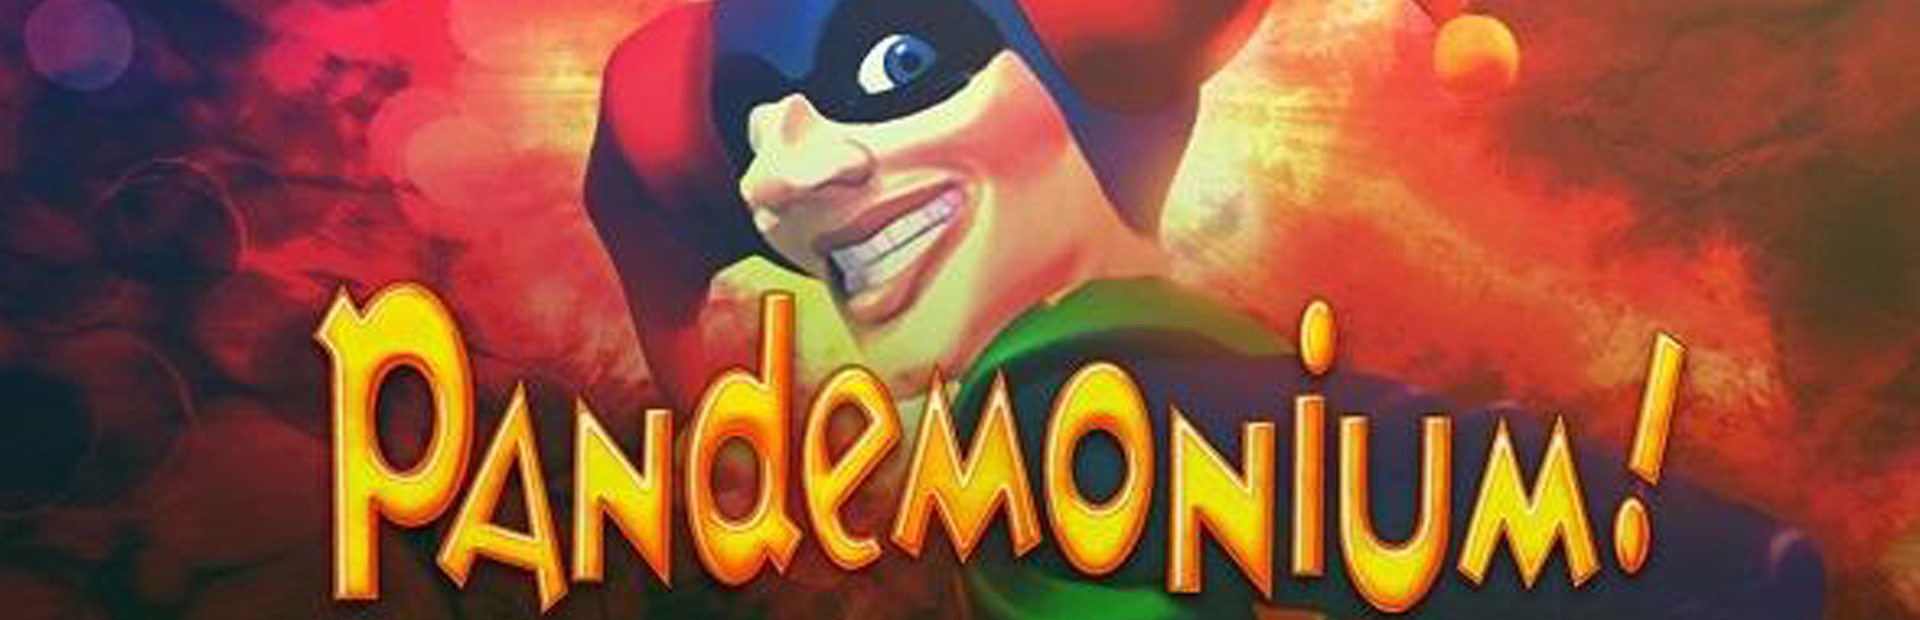 Pandemonium cover image